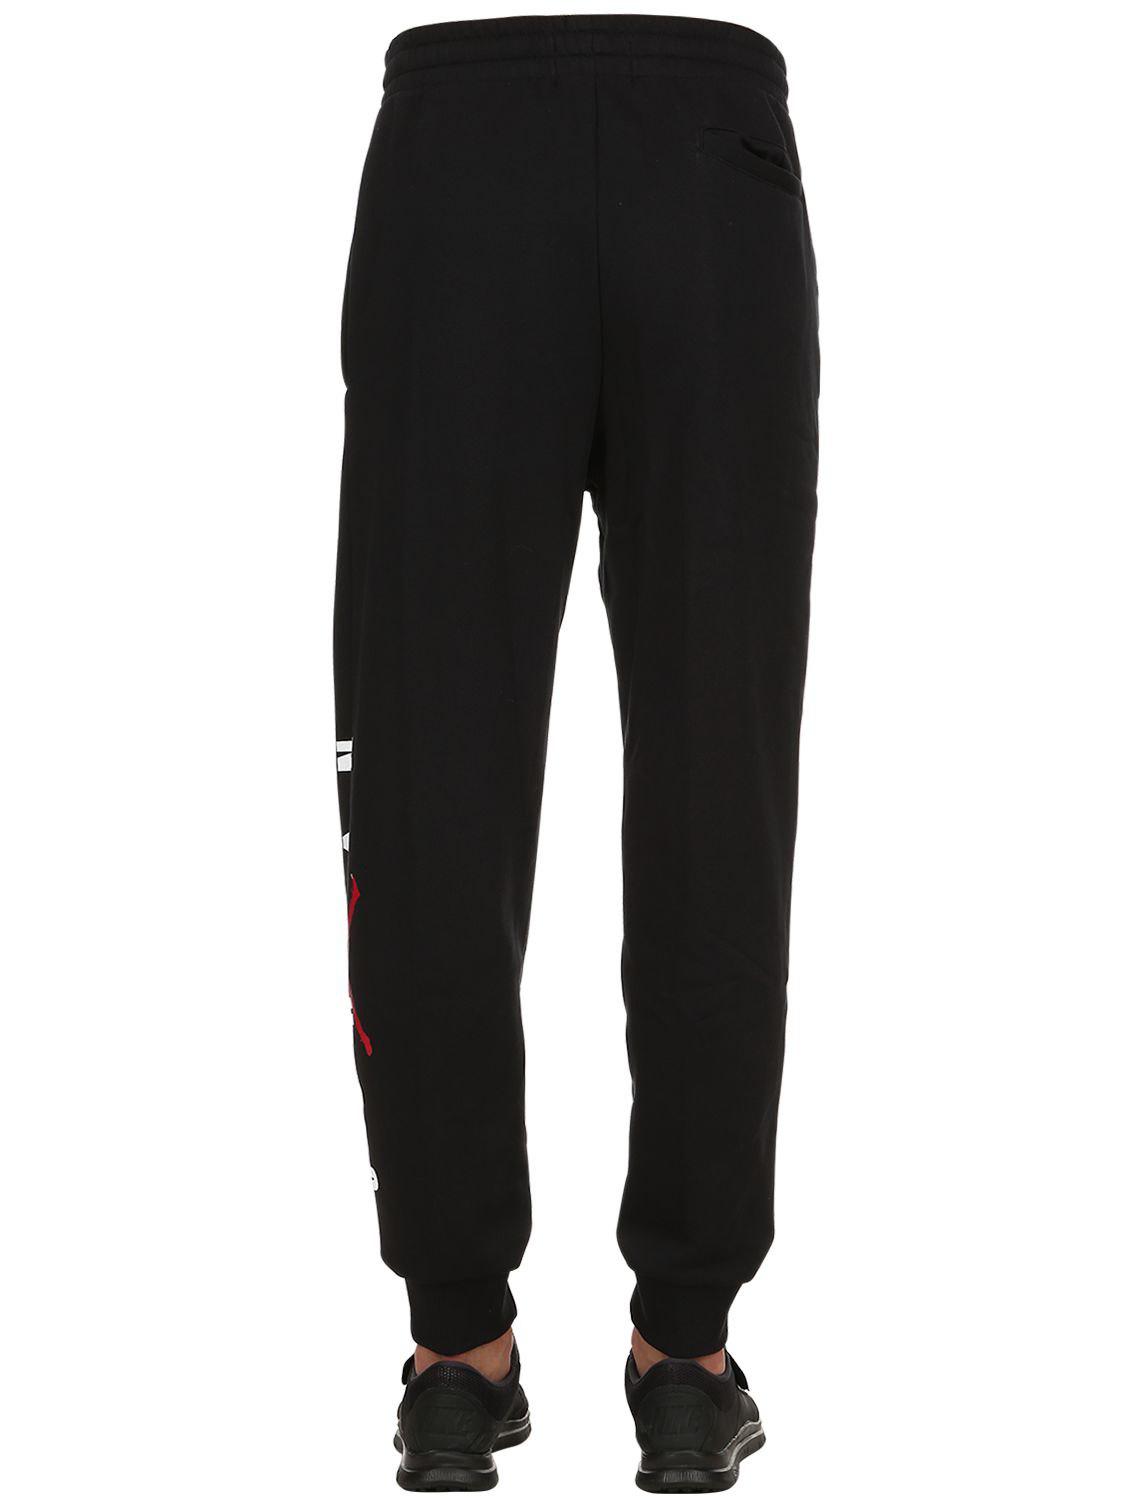 Nike Air Jordan Cotton Sweatpants in Black for Men - Lyst